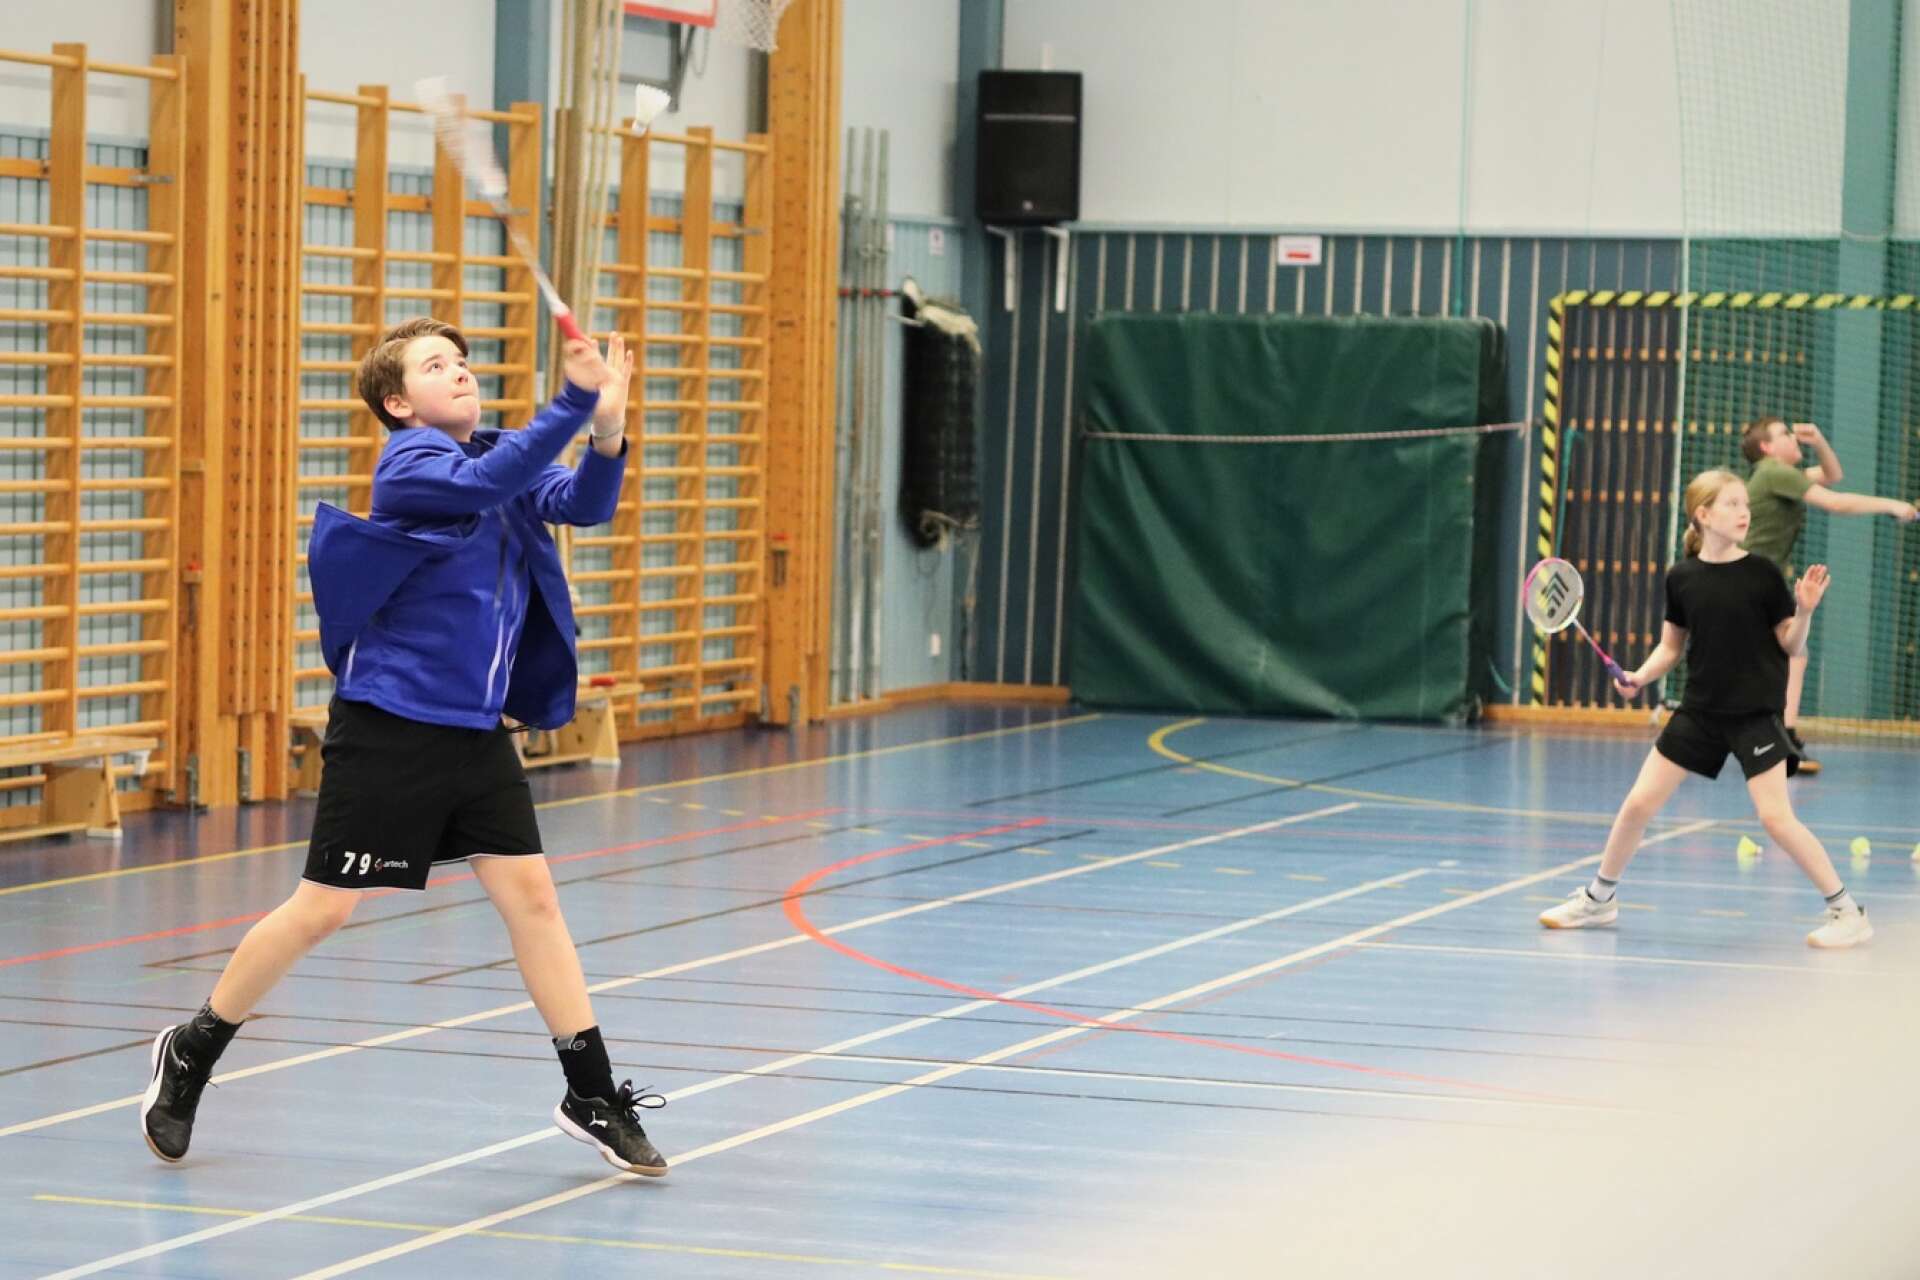 Badmintonklubben BMS Åminton har fått bra snurr på verksamheten den senaste tiden. William Danneteg är en av ungdomarna som har börjat spela de senaste åren. 